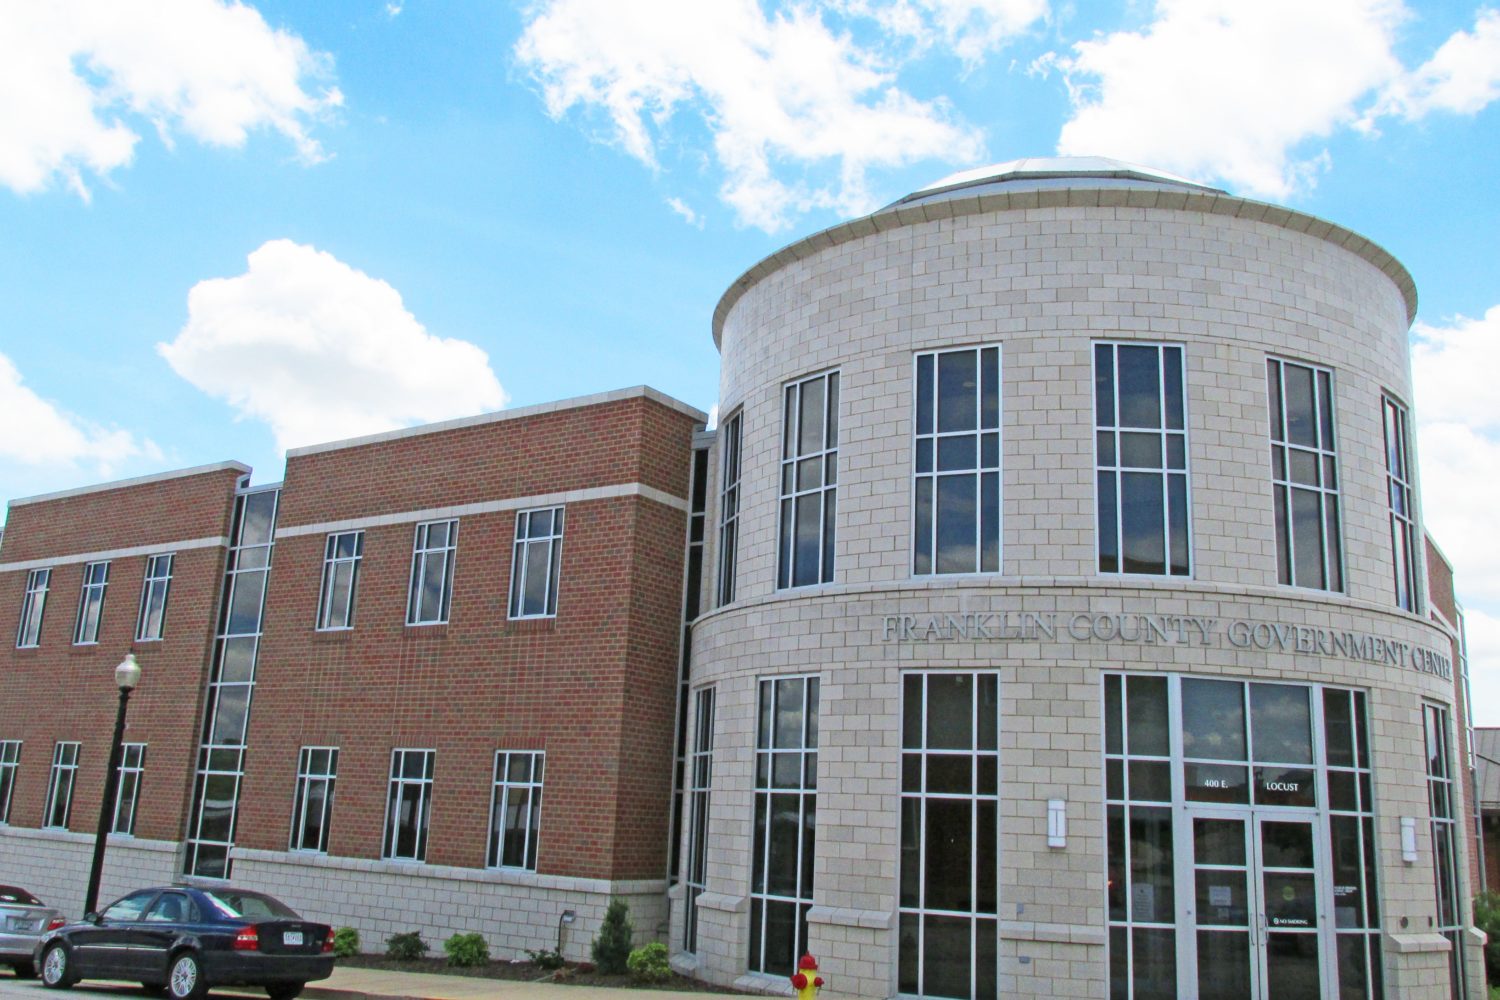 Franklin County Government Center in Union, Missouri